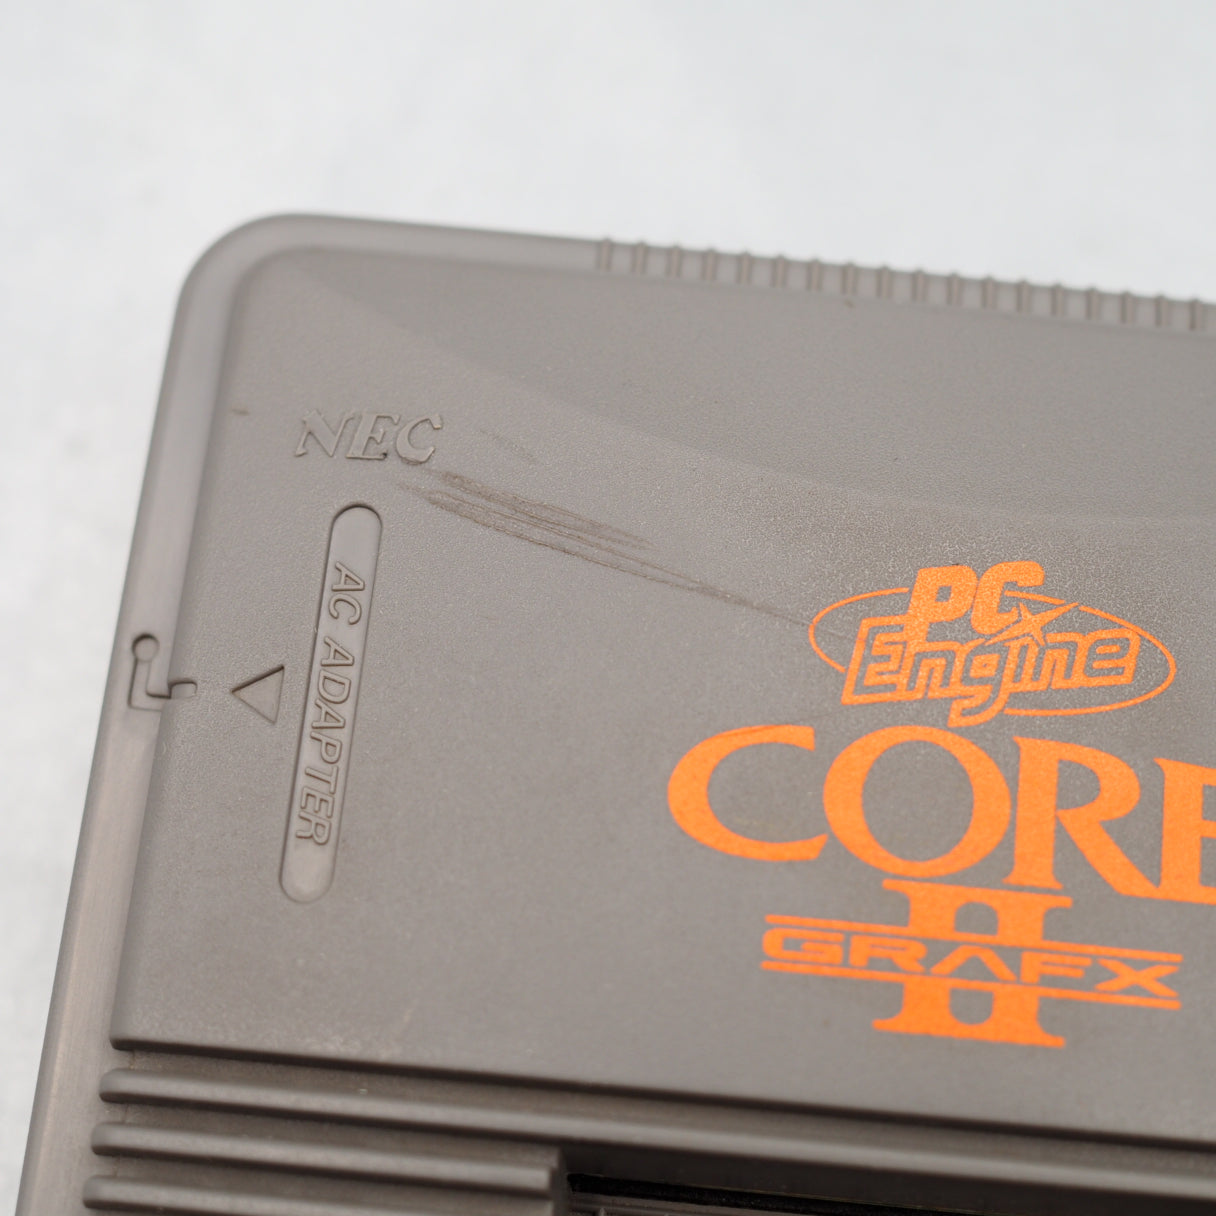 PC Engine CoreGrafx II